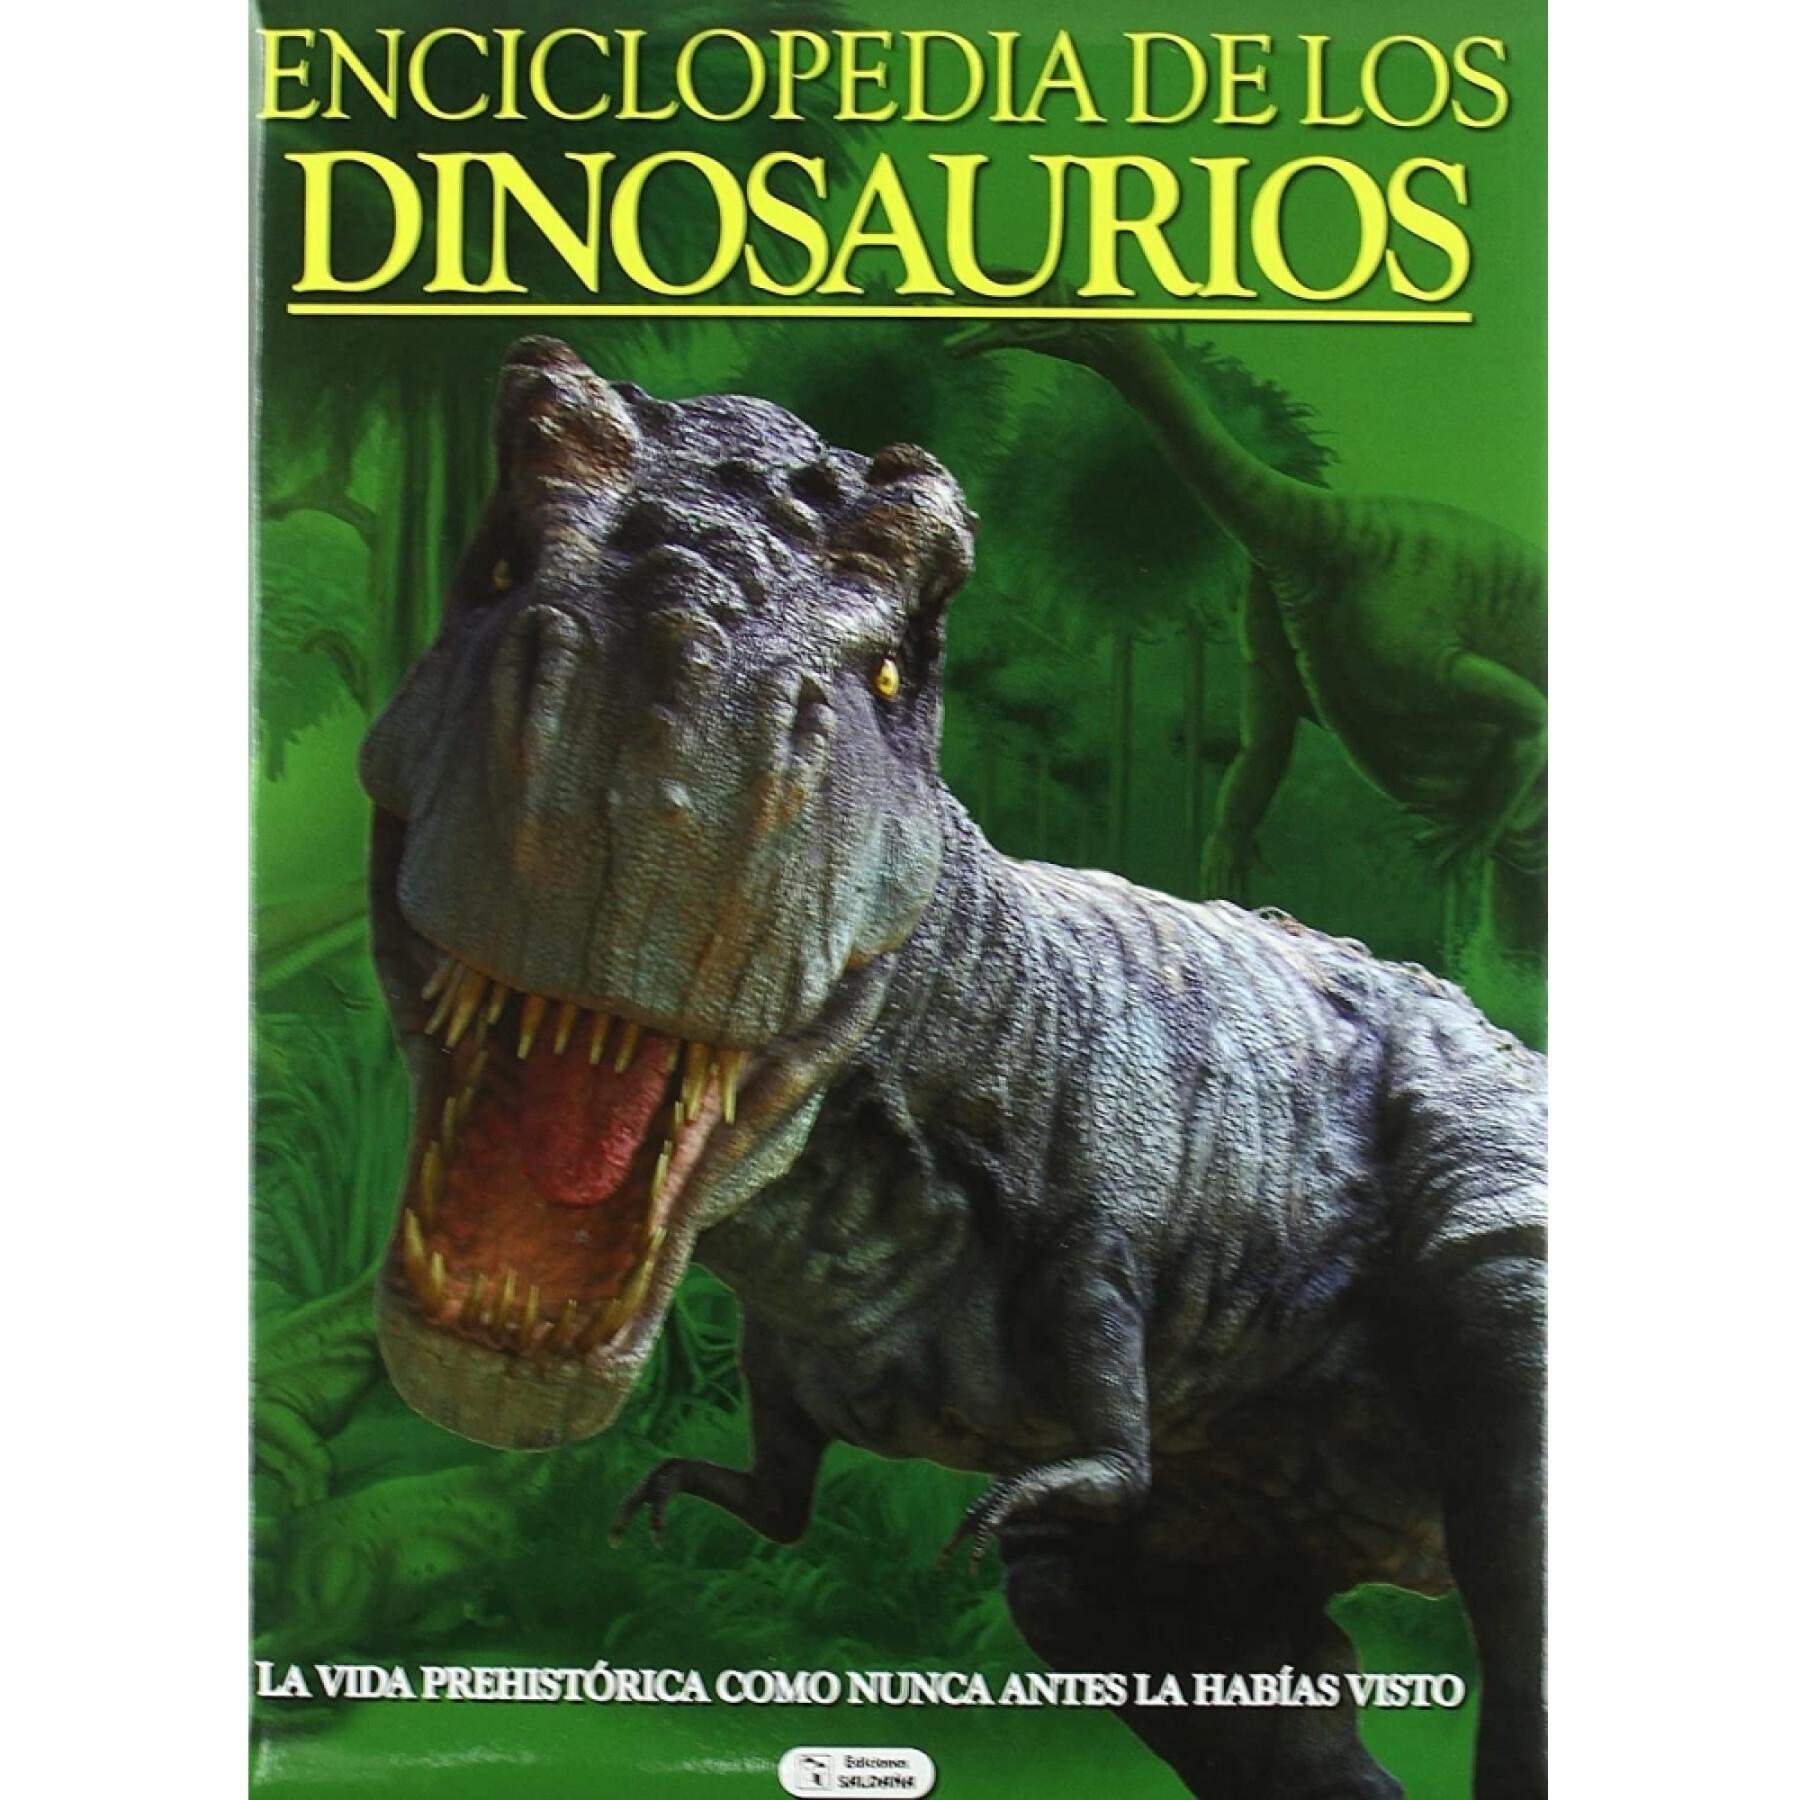 28-stronicowa książka z encyklopedią dinozaurów Ediciones Saldaña